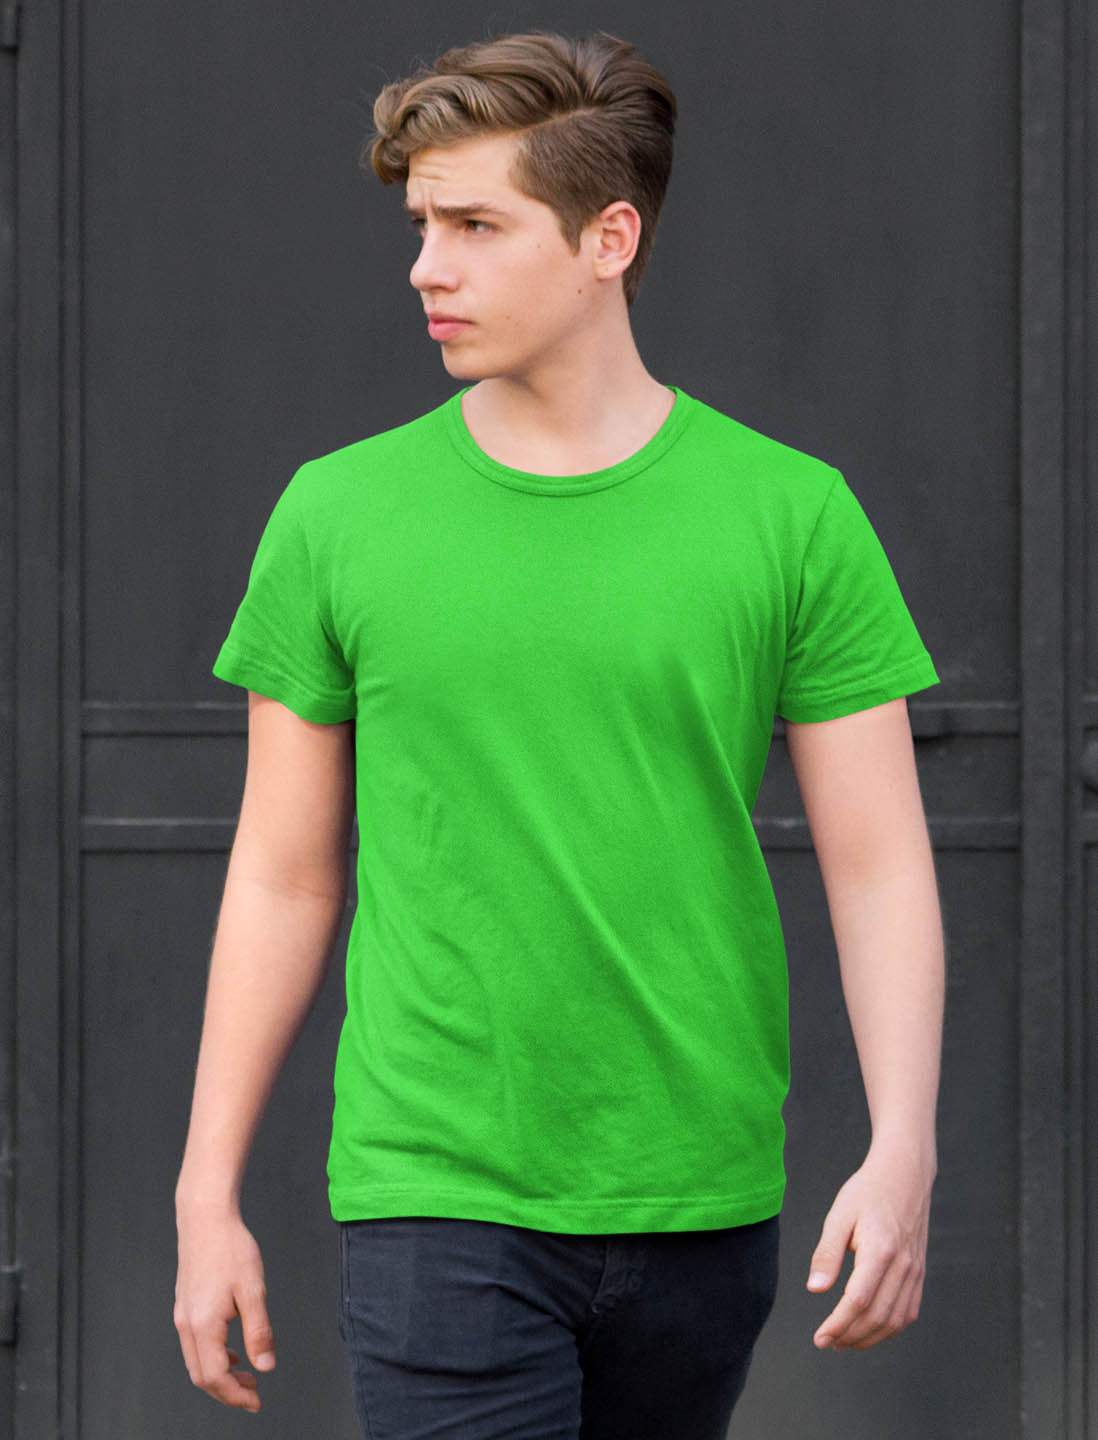 Men's Parrot Green Cotton T-Shirt